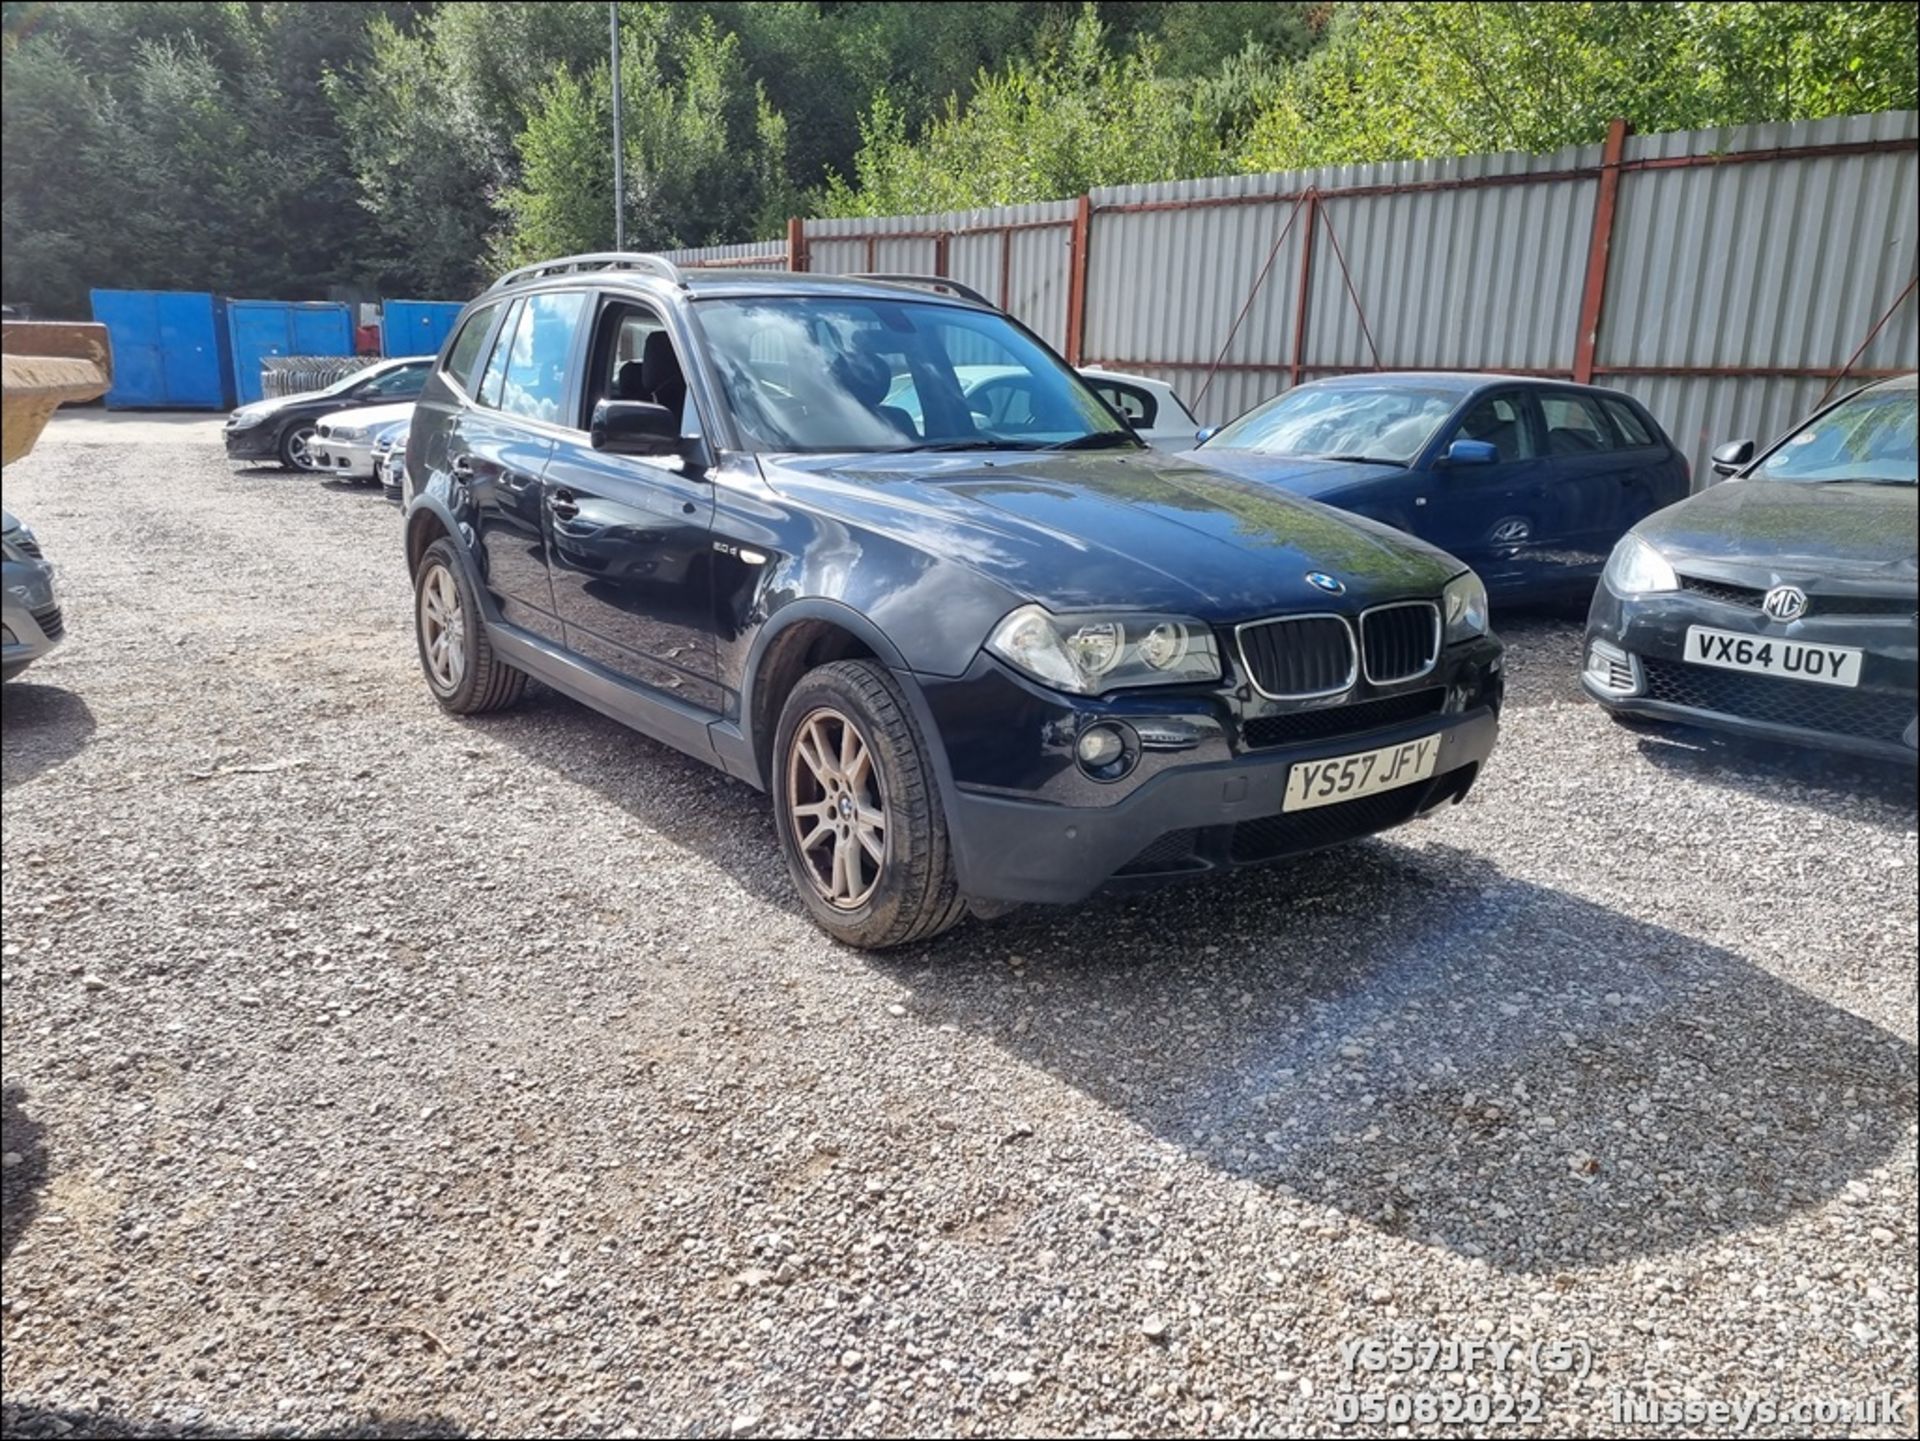 08/57 BMW X3 SE - 1995cc 5dr Estate (Black) - Image 5 of 29